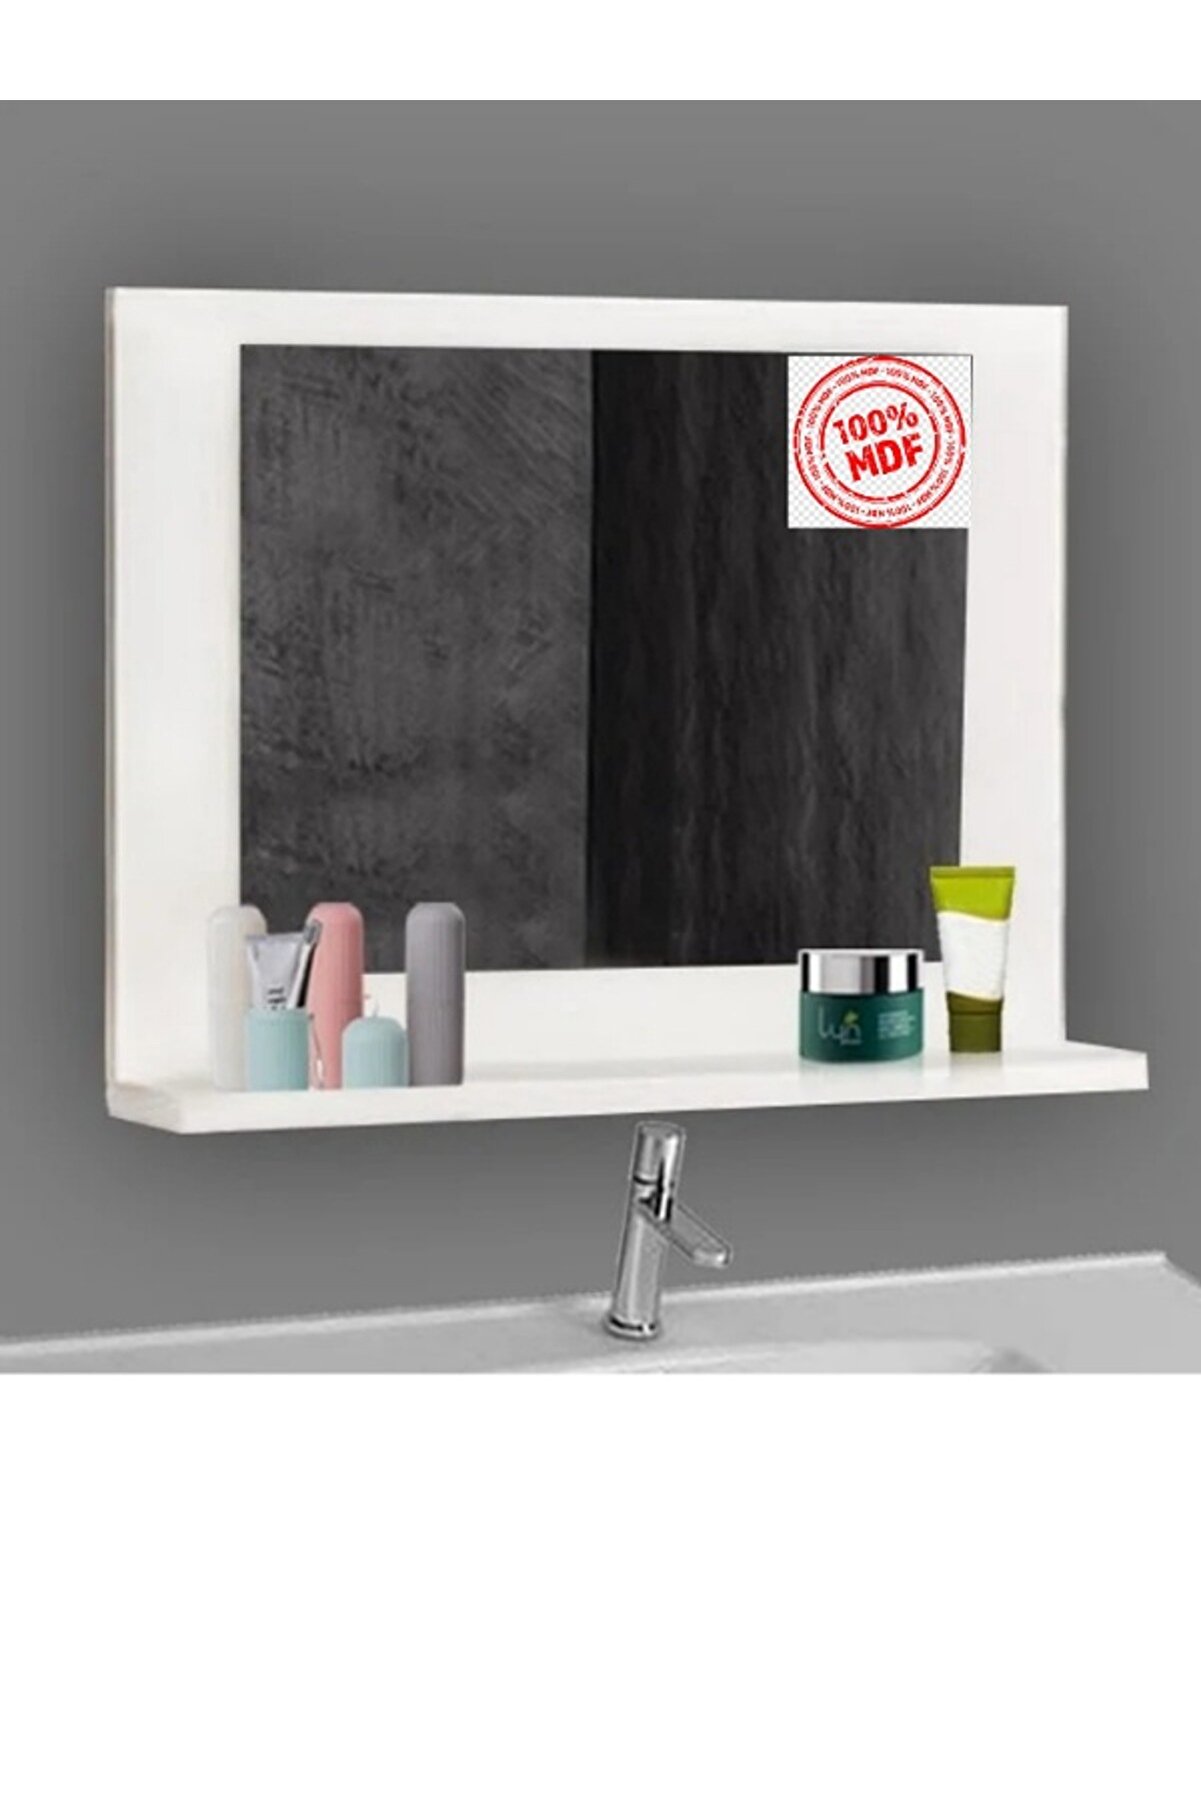 Ka-libra Raflı Lavabo Aynası , Ofis Hol Kolidor Dresuar Aynası Wc Banyo Düzenleyici Dolap60x45 Beyaz (%%MDF)